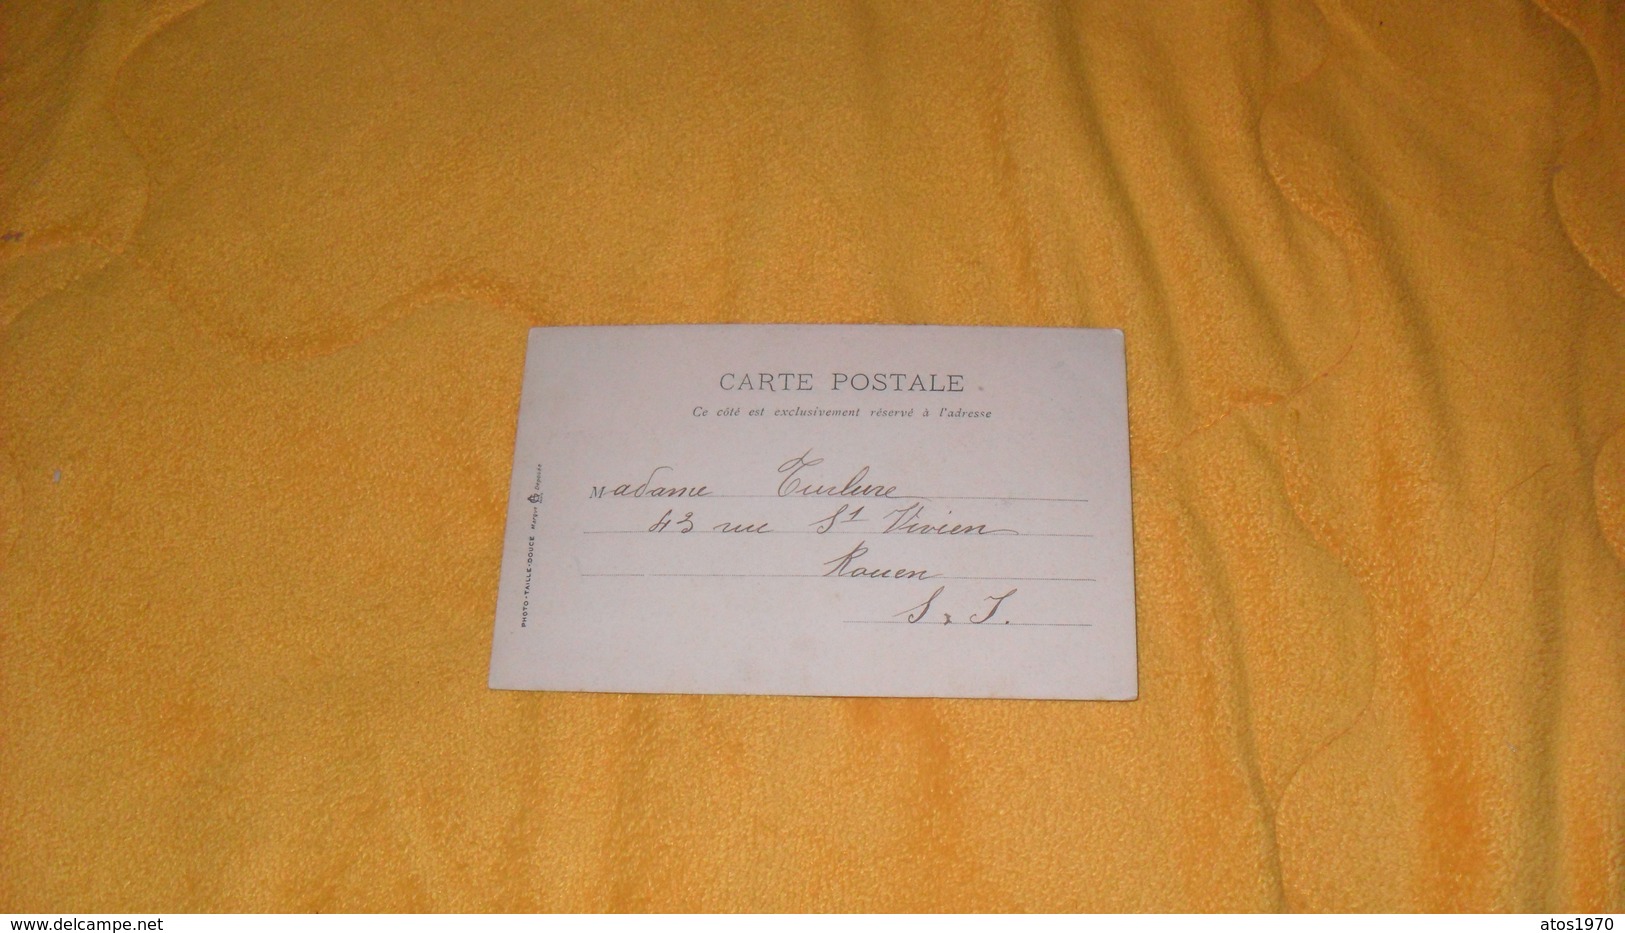 CARTE POSTALE ANCIENNE CIRCULEE DE 1905.../ UNE INVITATION SOIREE FETE...HENRI MORIN...CACHETS + TIMBRE - Morin, Henri